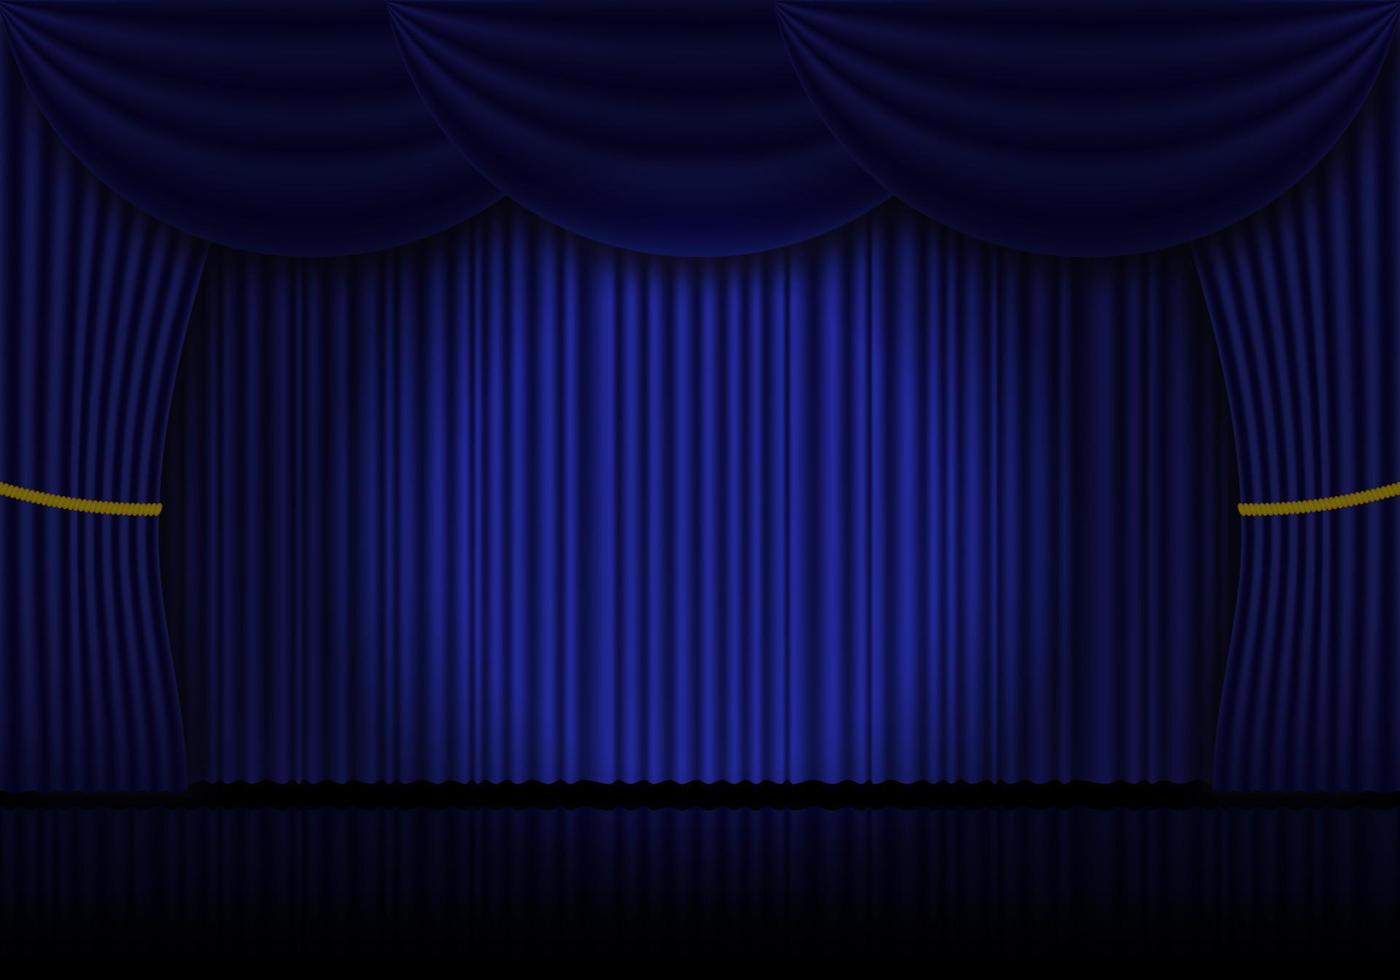 blu tenda musica lirica, cinema o Teatro palcoscenico tende. riflettore su chiuso velluto le tende sfondo. vettore illustrazione